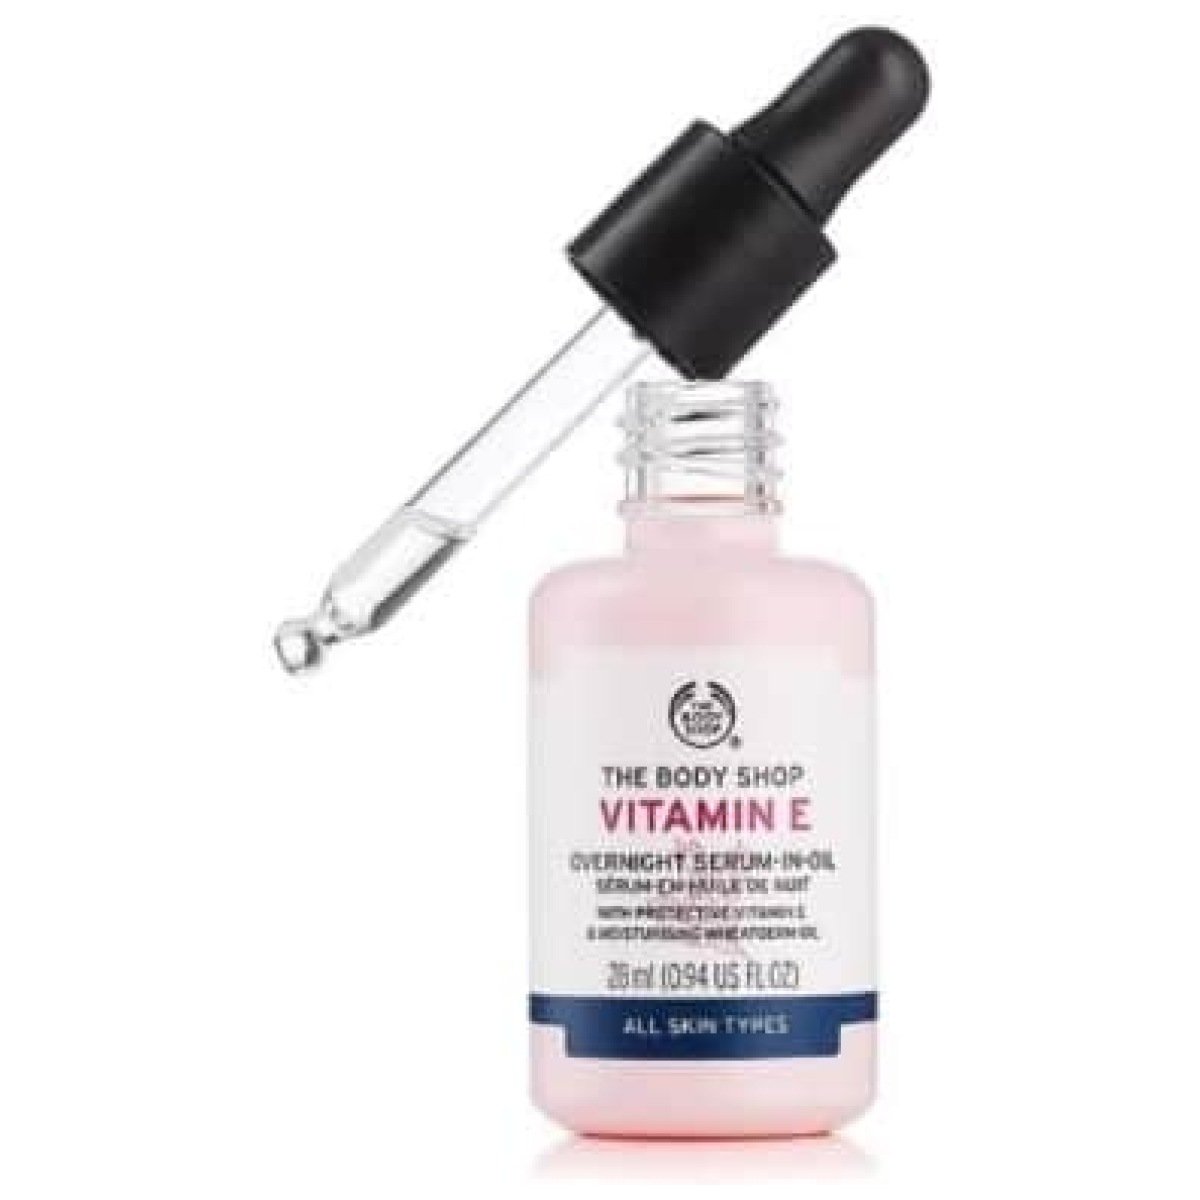 The Body Shop Vitamin E Overnight Serum-In-Oil 28Ml